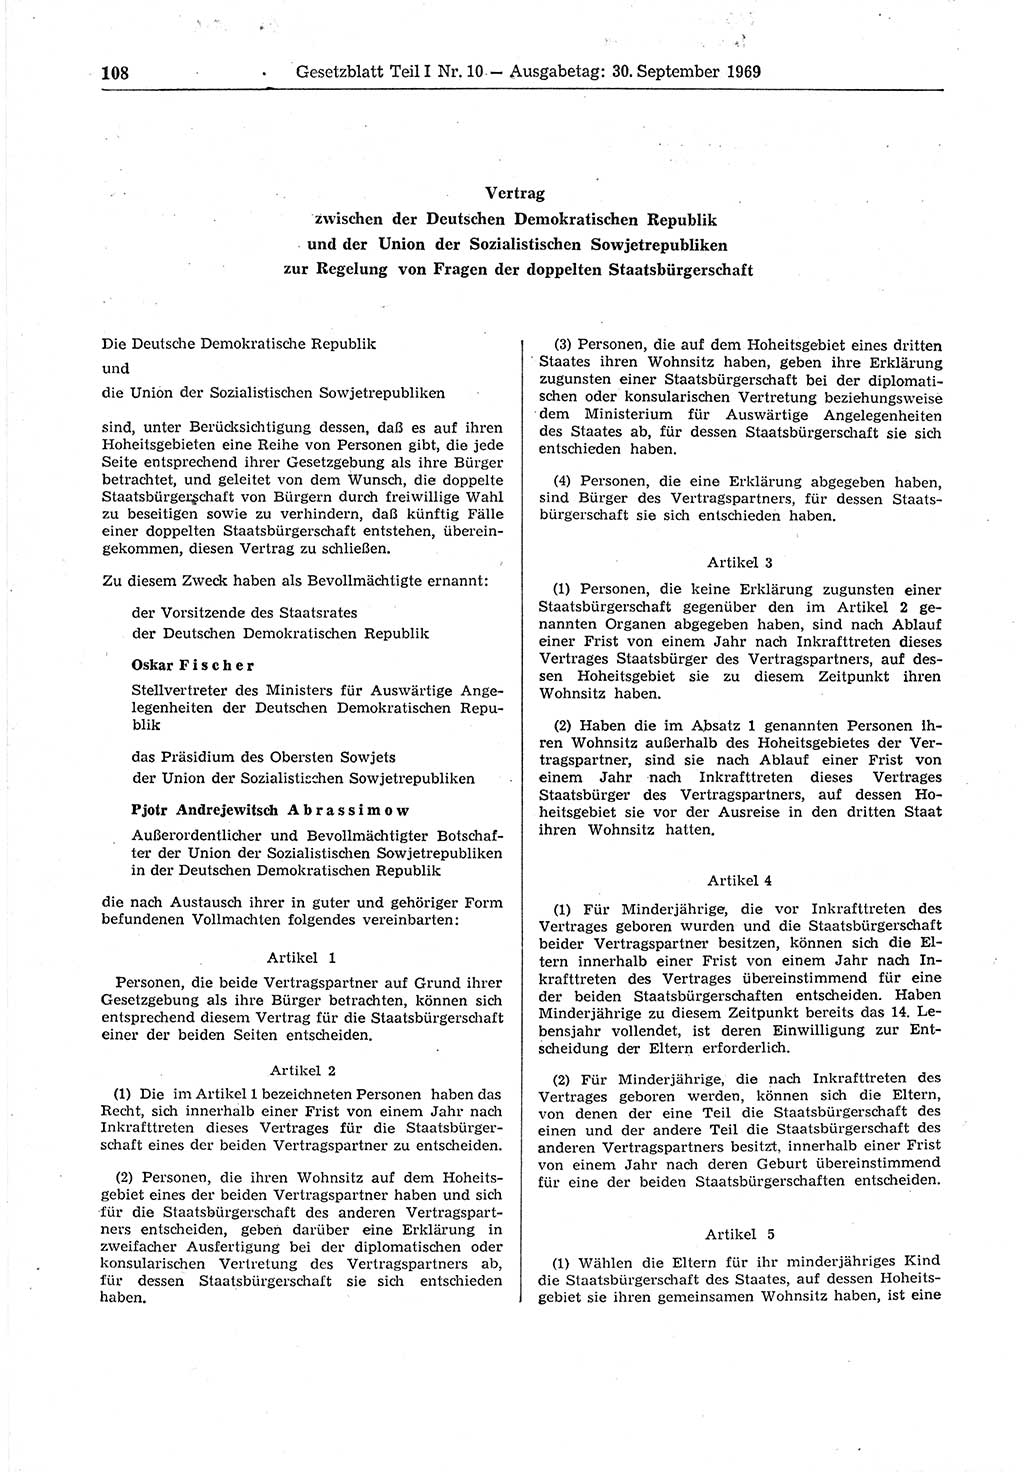 Gesetzblatt (GBl.) der Deutschen Demokratischen Republik (DDR) Teil Ⅰ 1969, Seite 108 (GBl. DDR Ⅰ 1969, S. 108)